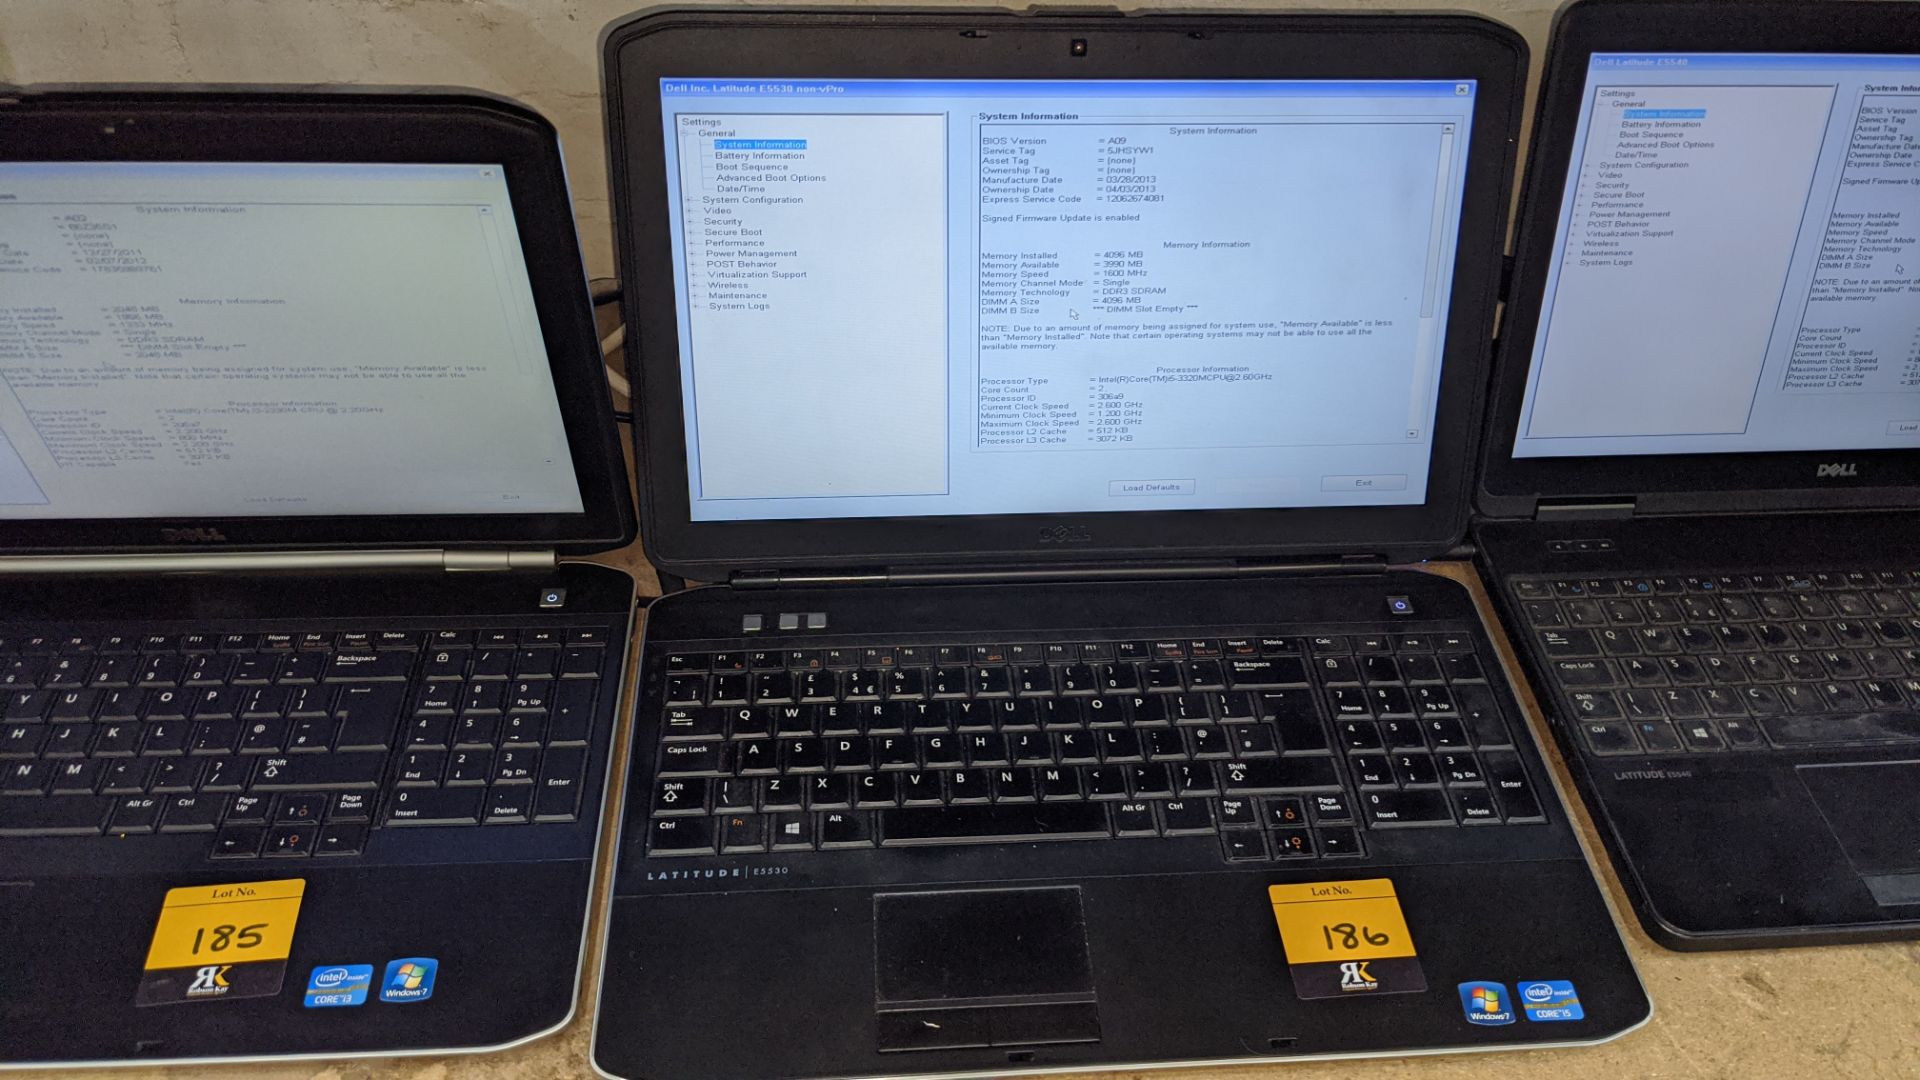 Dell Latitude E5530 notebook computer with Intel Core i5-3320 processor, 4Gb RAM, 500Gb hard drive,